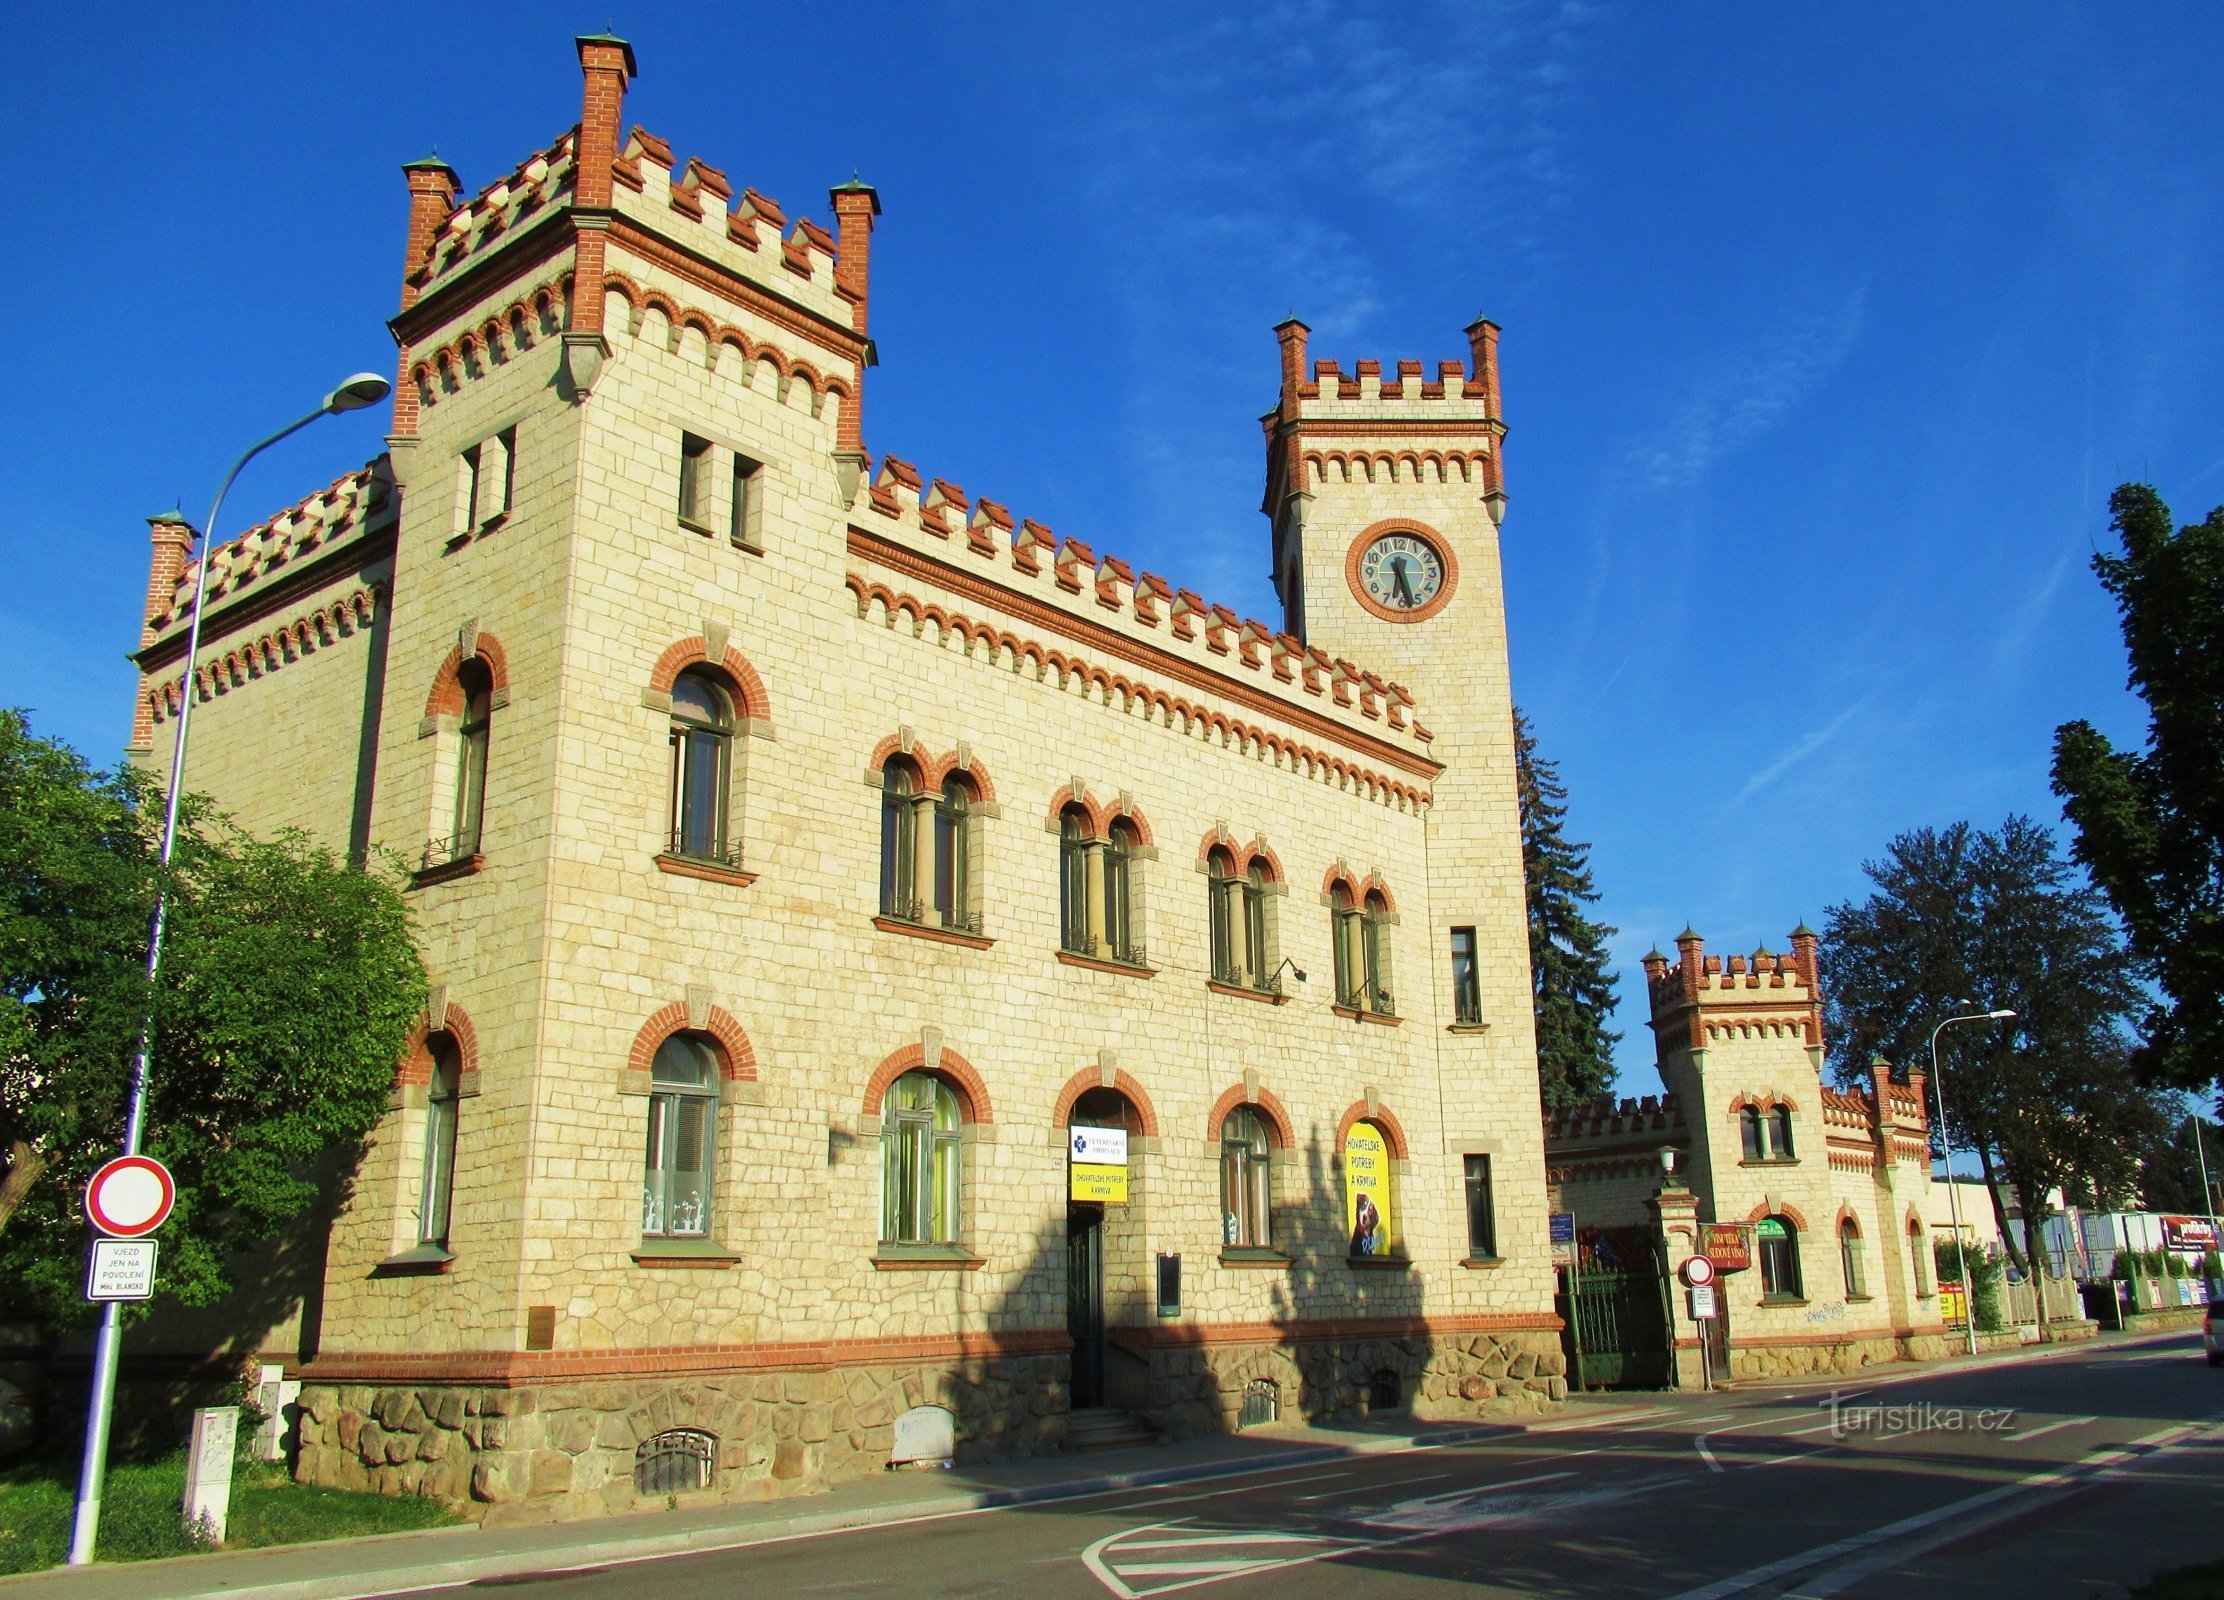 Tòa nhà lịch sử của công ty Ježek ở Blansko